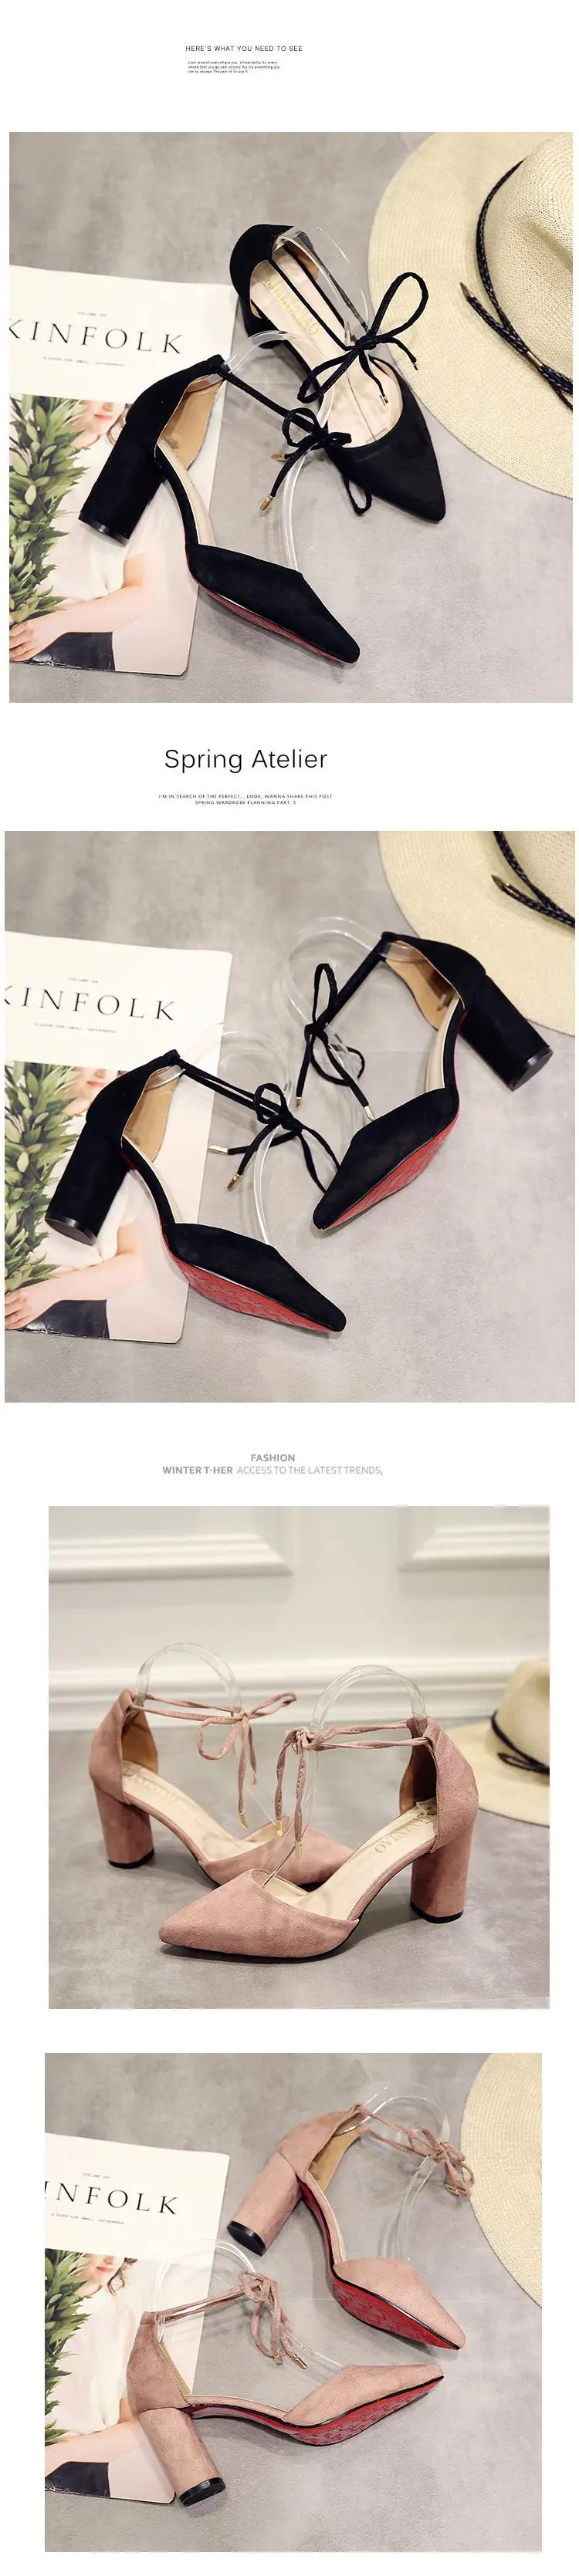 Г., новая весенняя обувь на высоком толстом каблуке из черной замши для работы Модные женские босоножки с острым носком в Корейском стиле